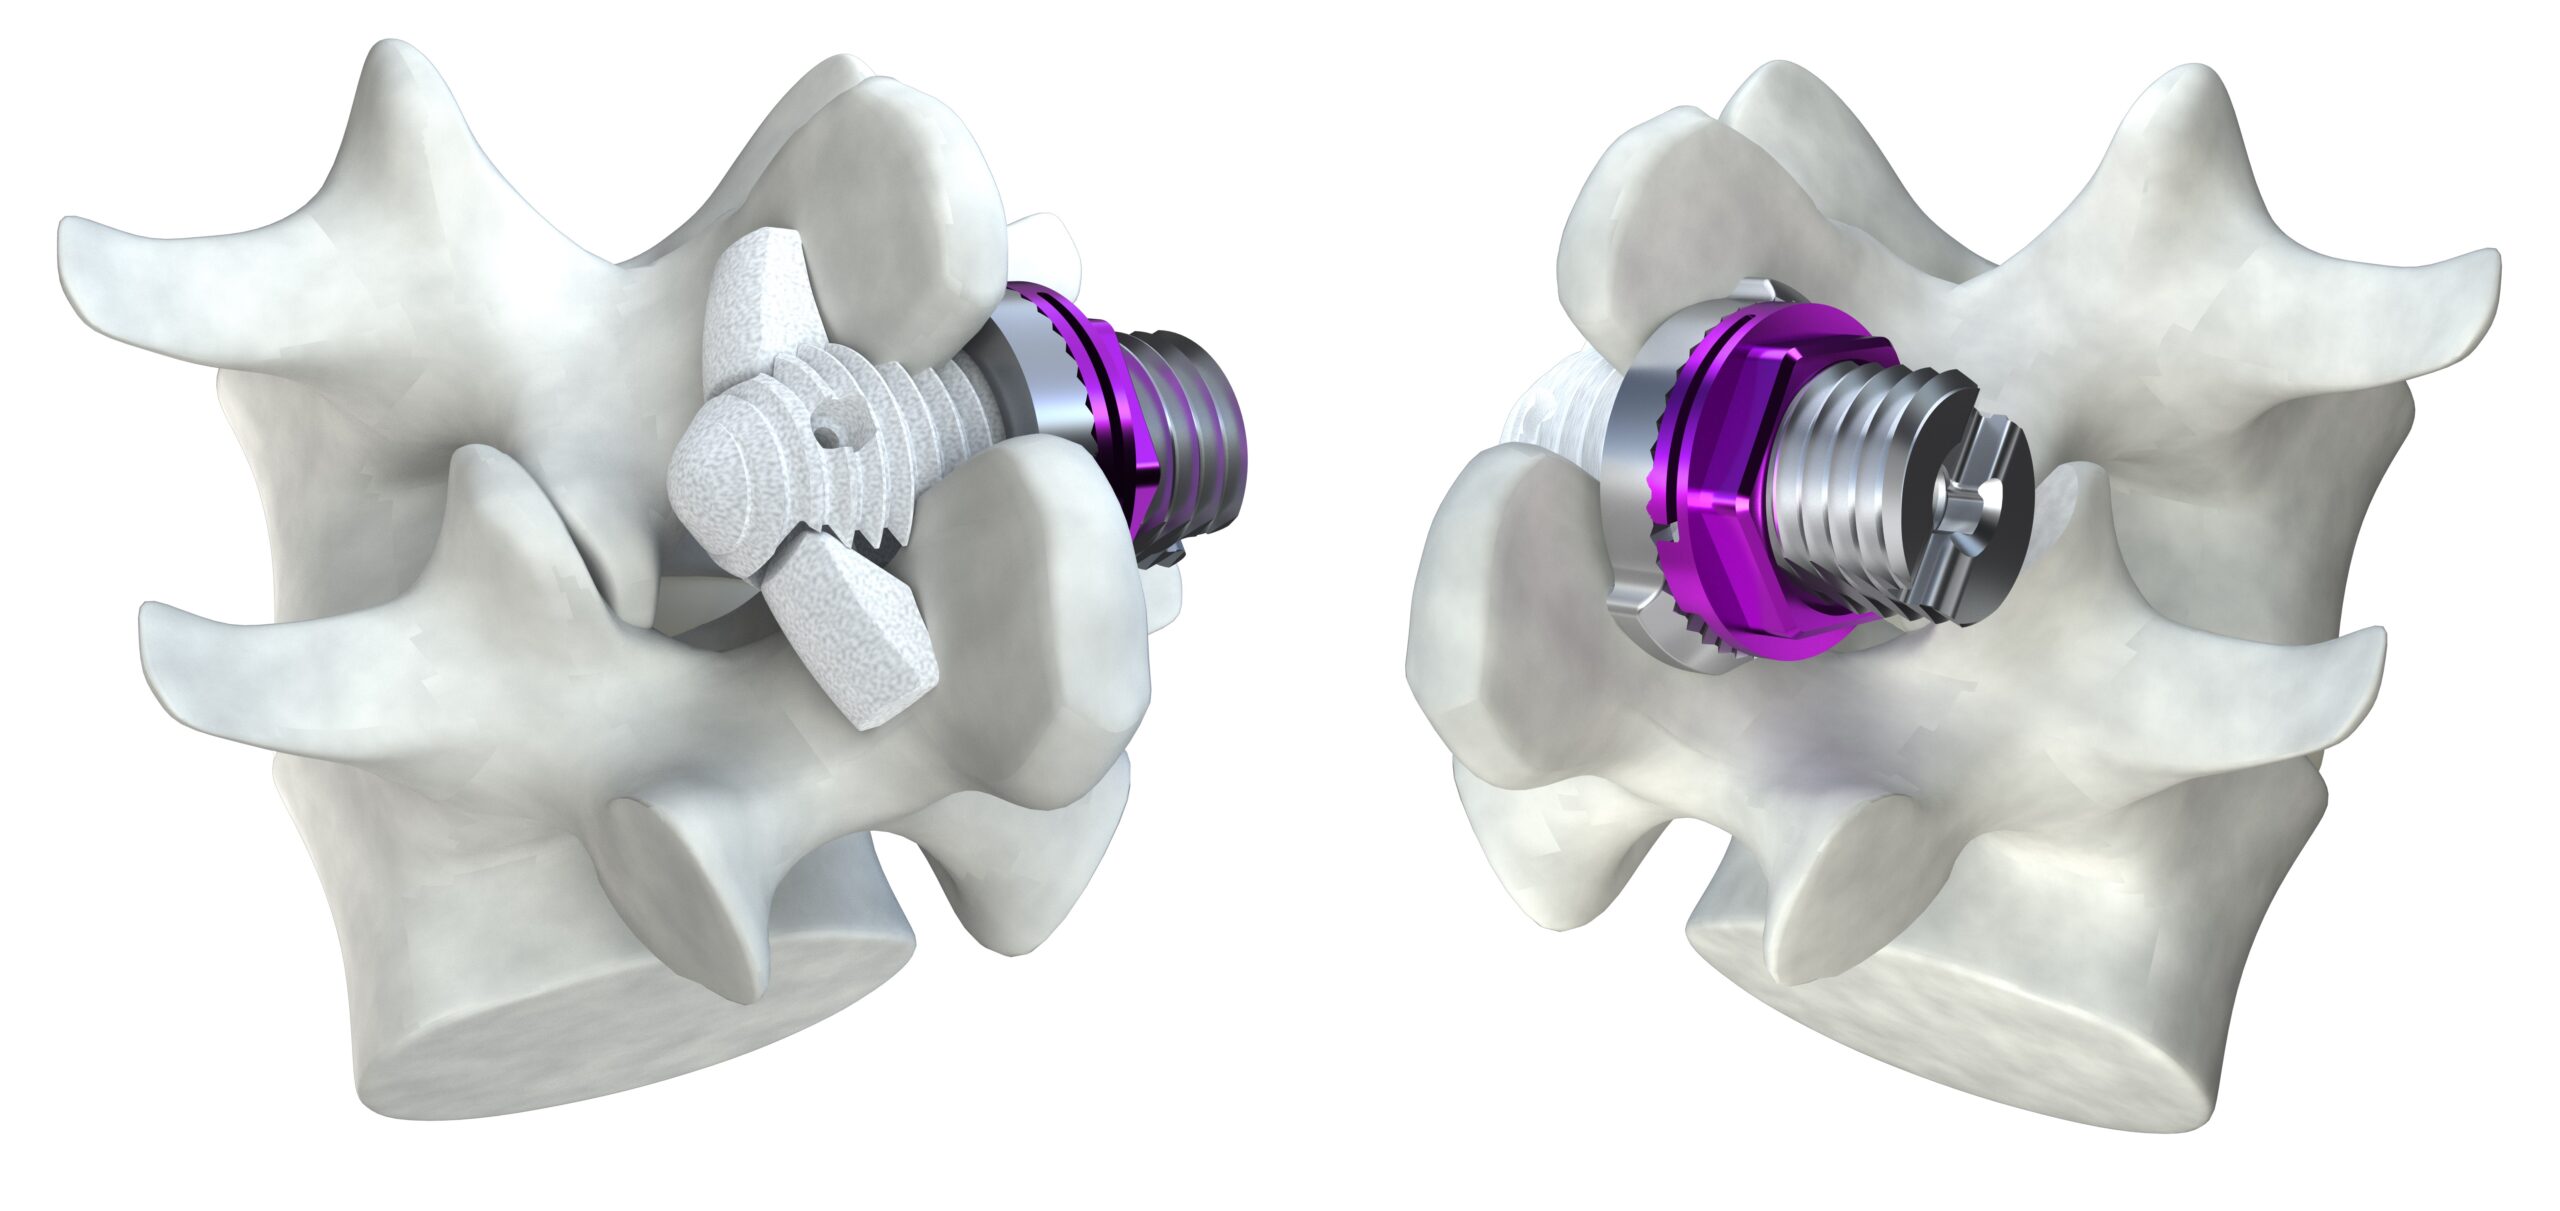 minuteman - minimally invasive spinal fusion - featured